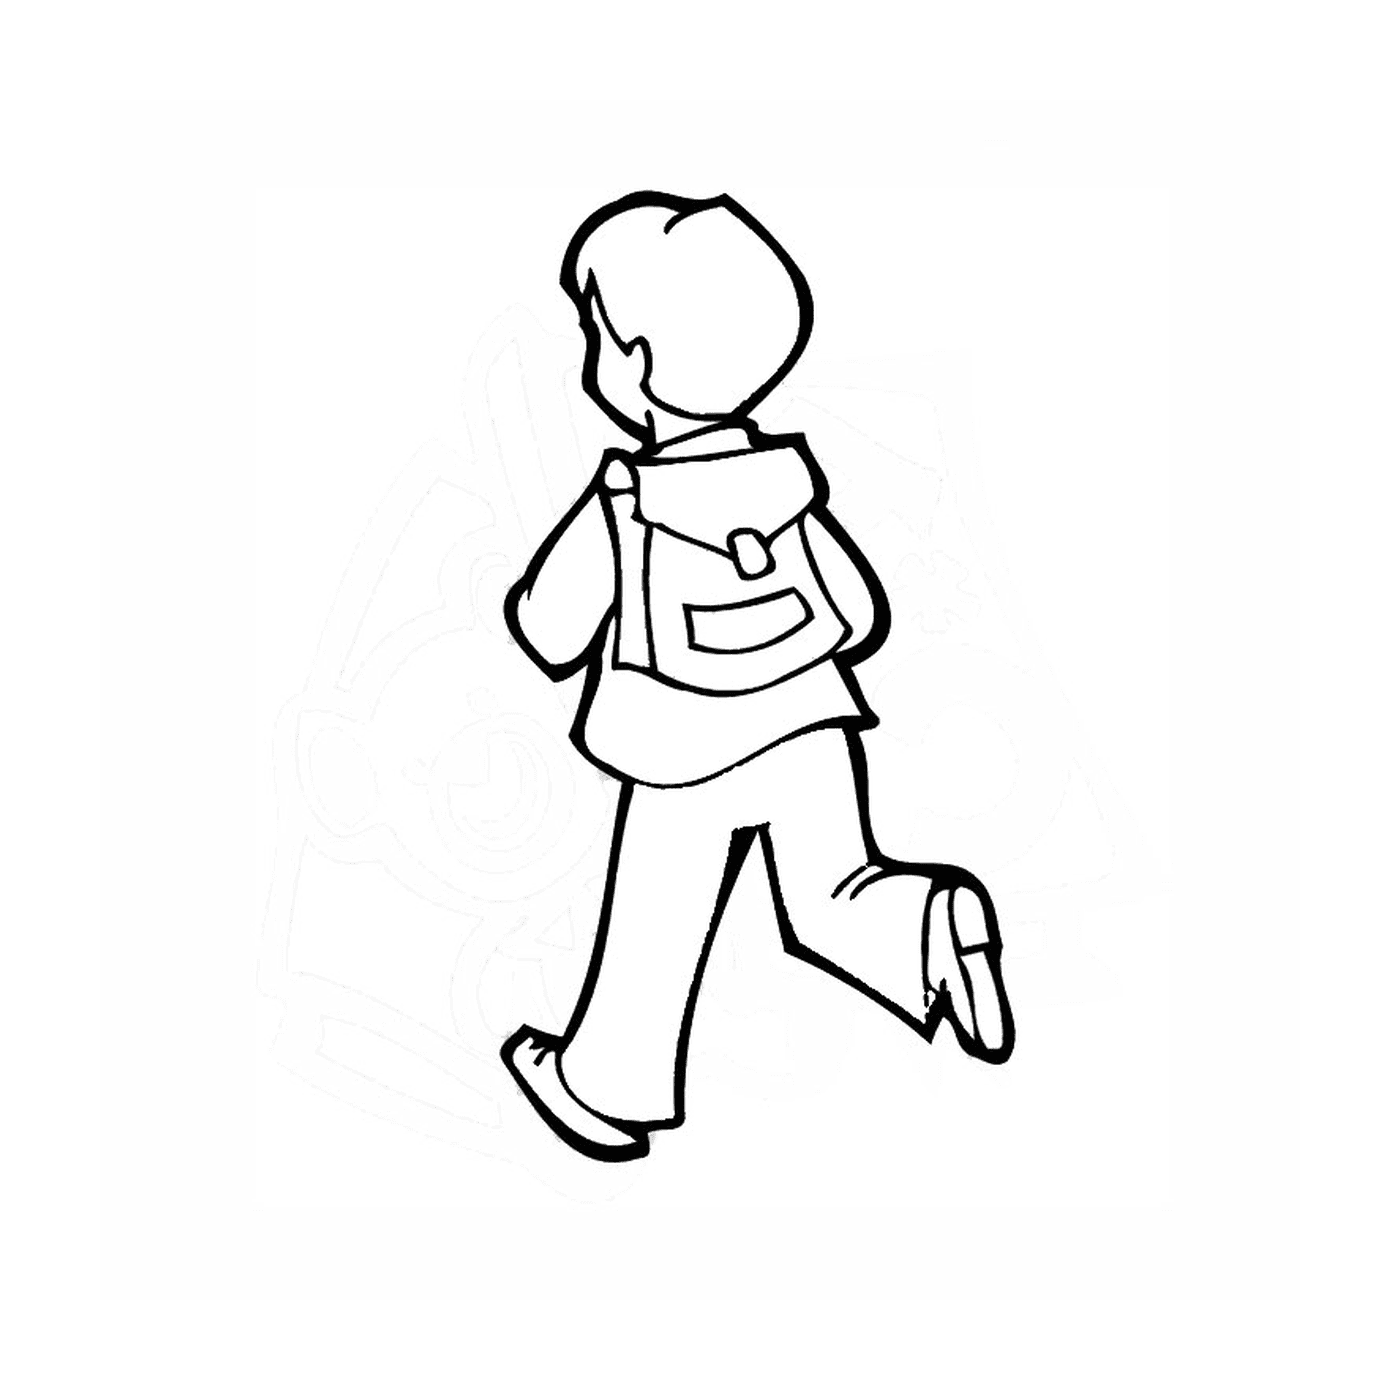  Voy a la escuela: un chico caminando 